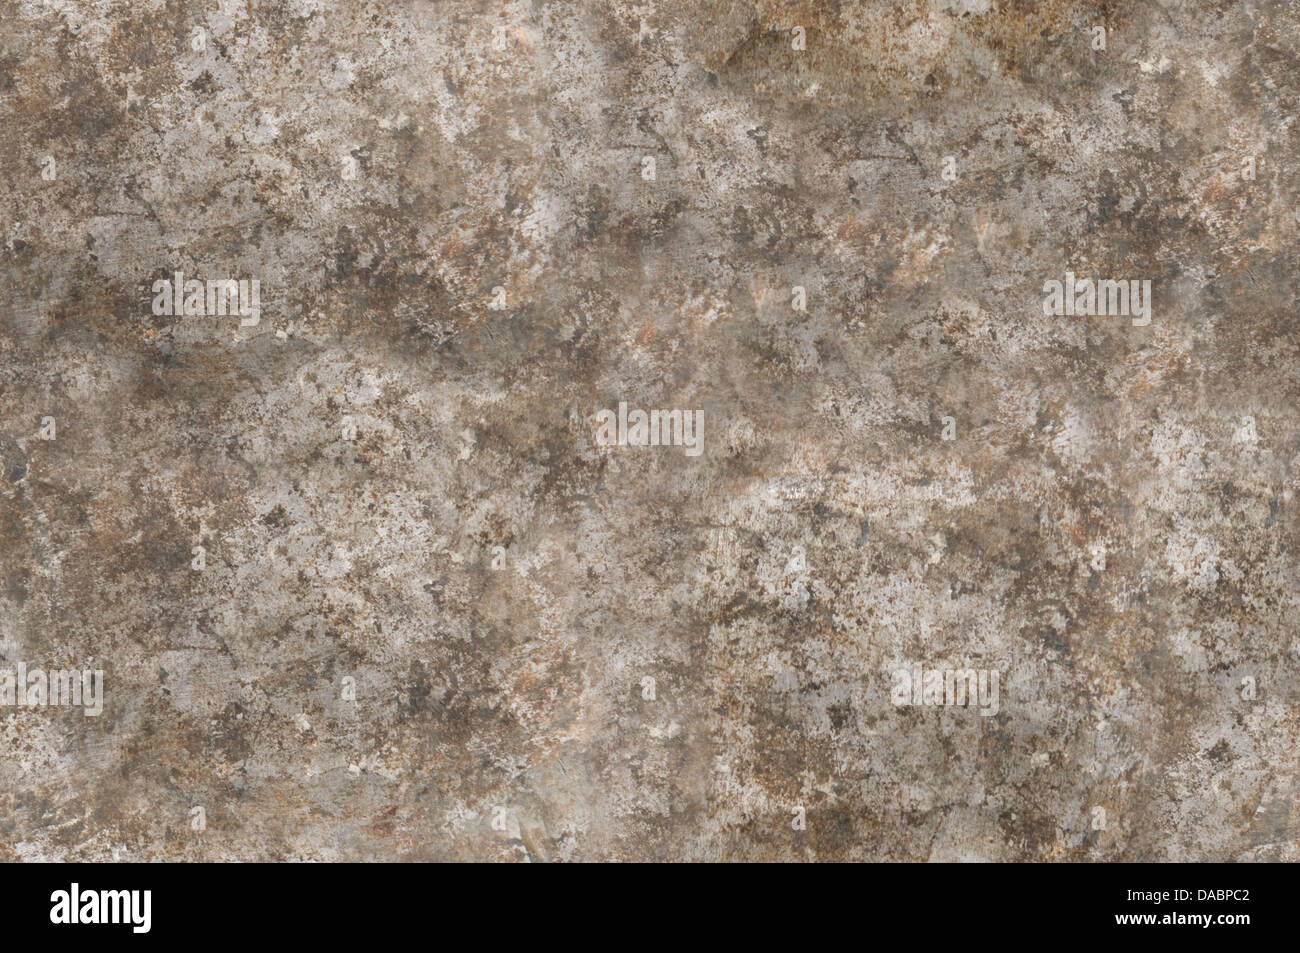 Métal gris en détresse en toute transparence de la texture de surface raccordable Banque D'Images